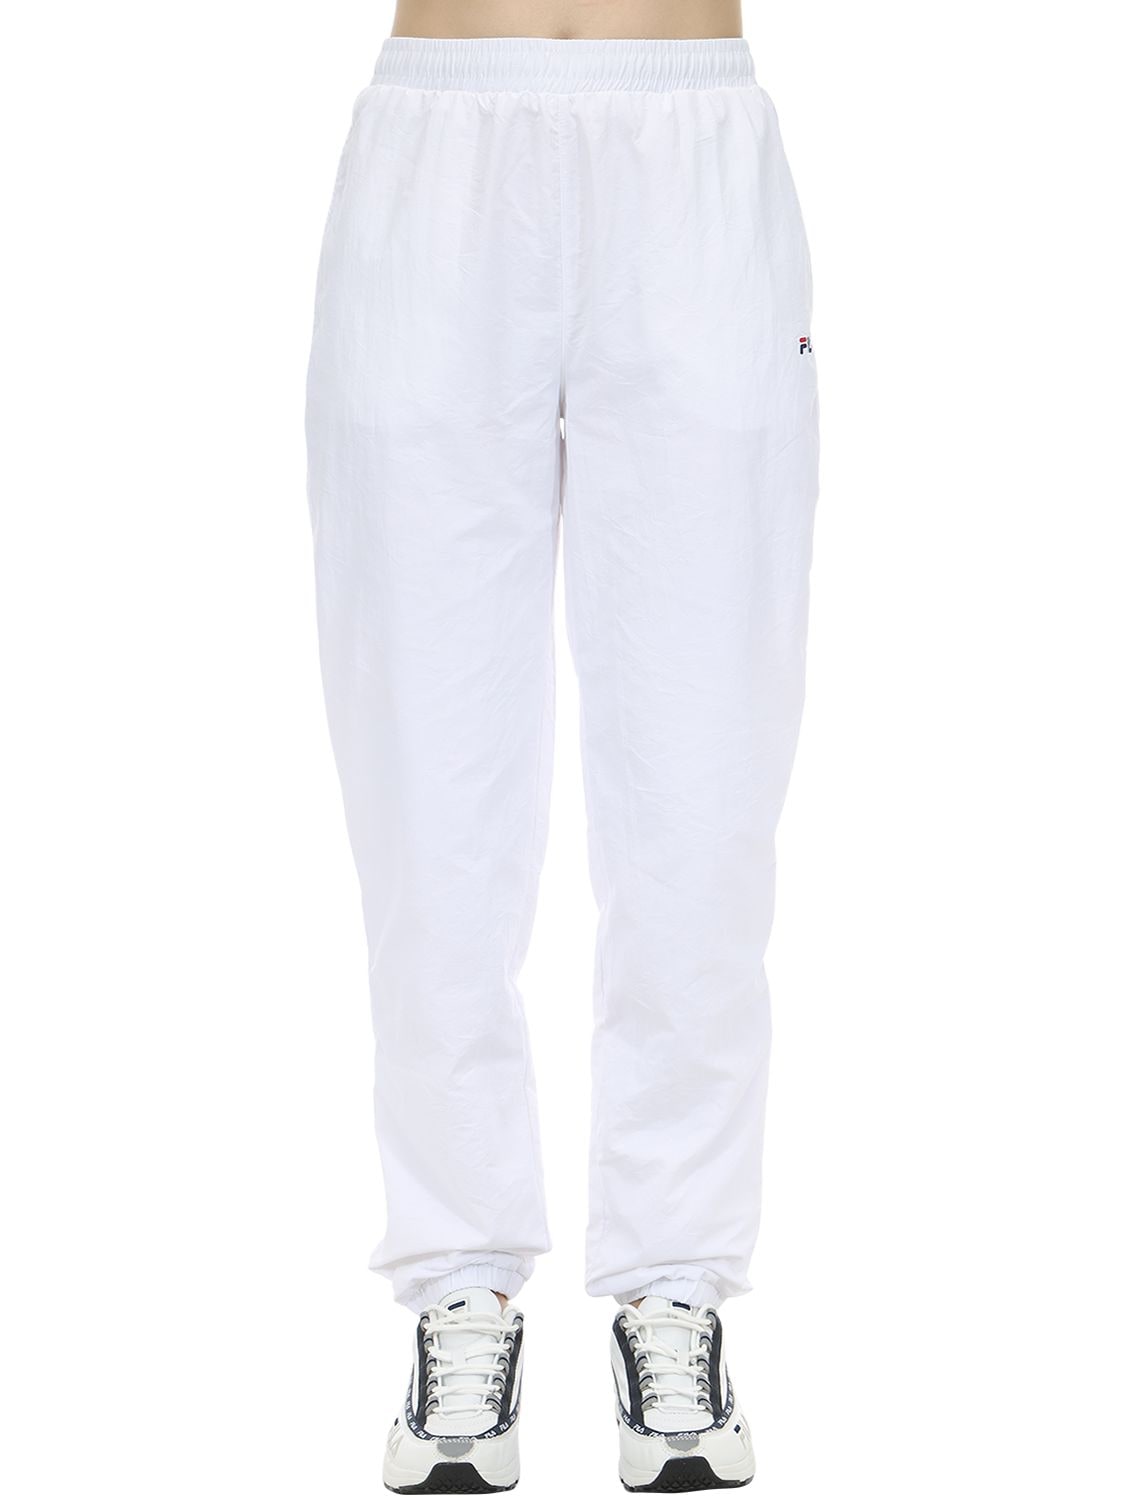 fila pants white